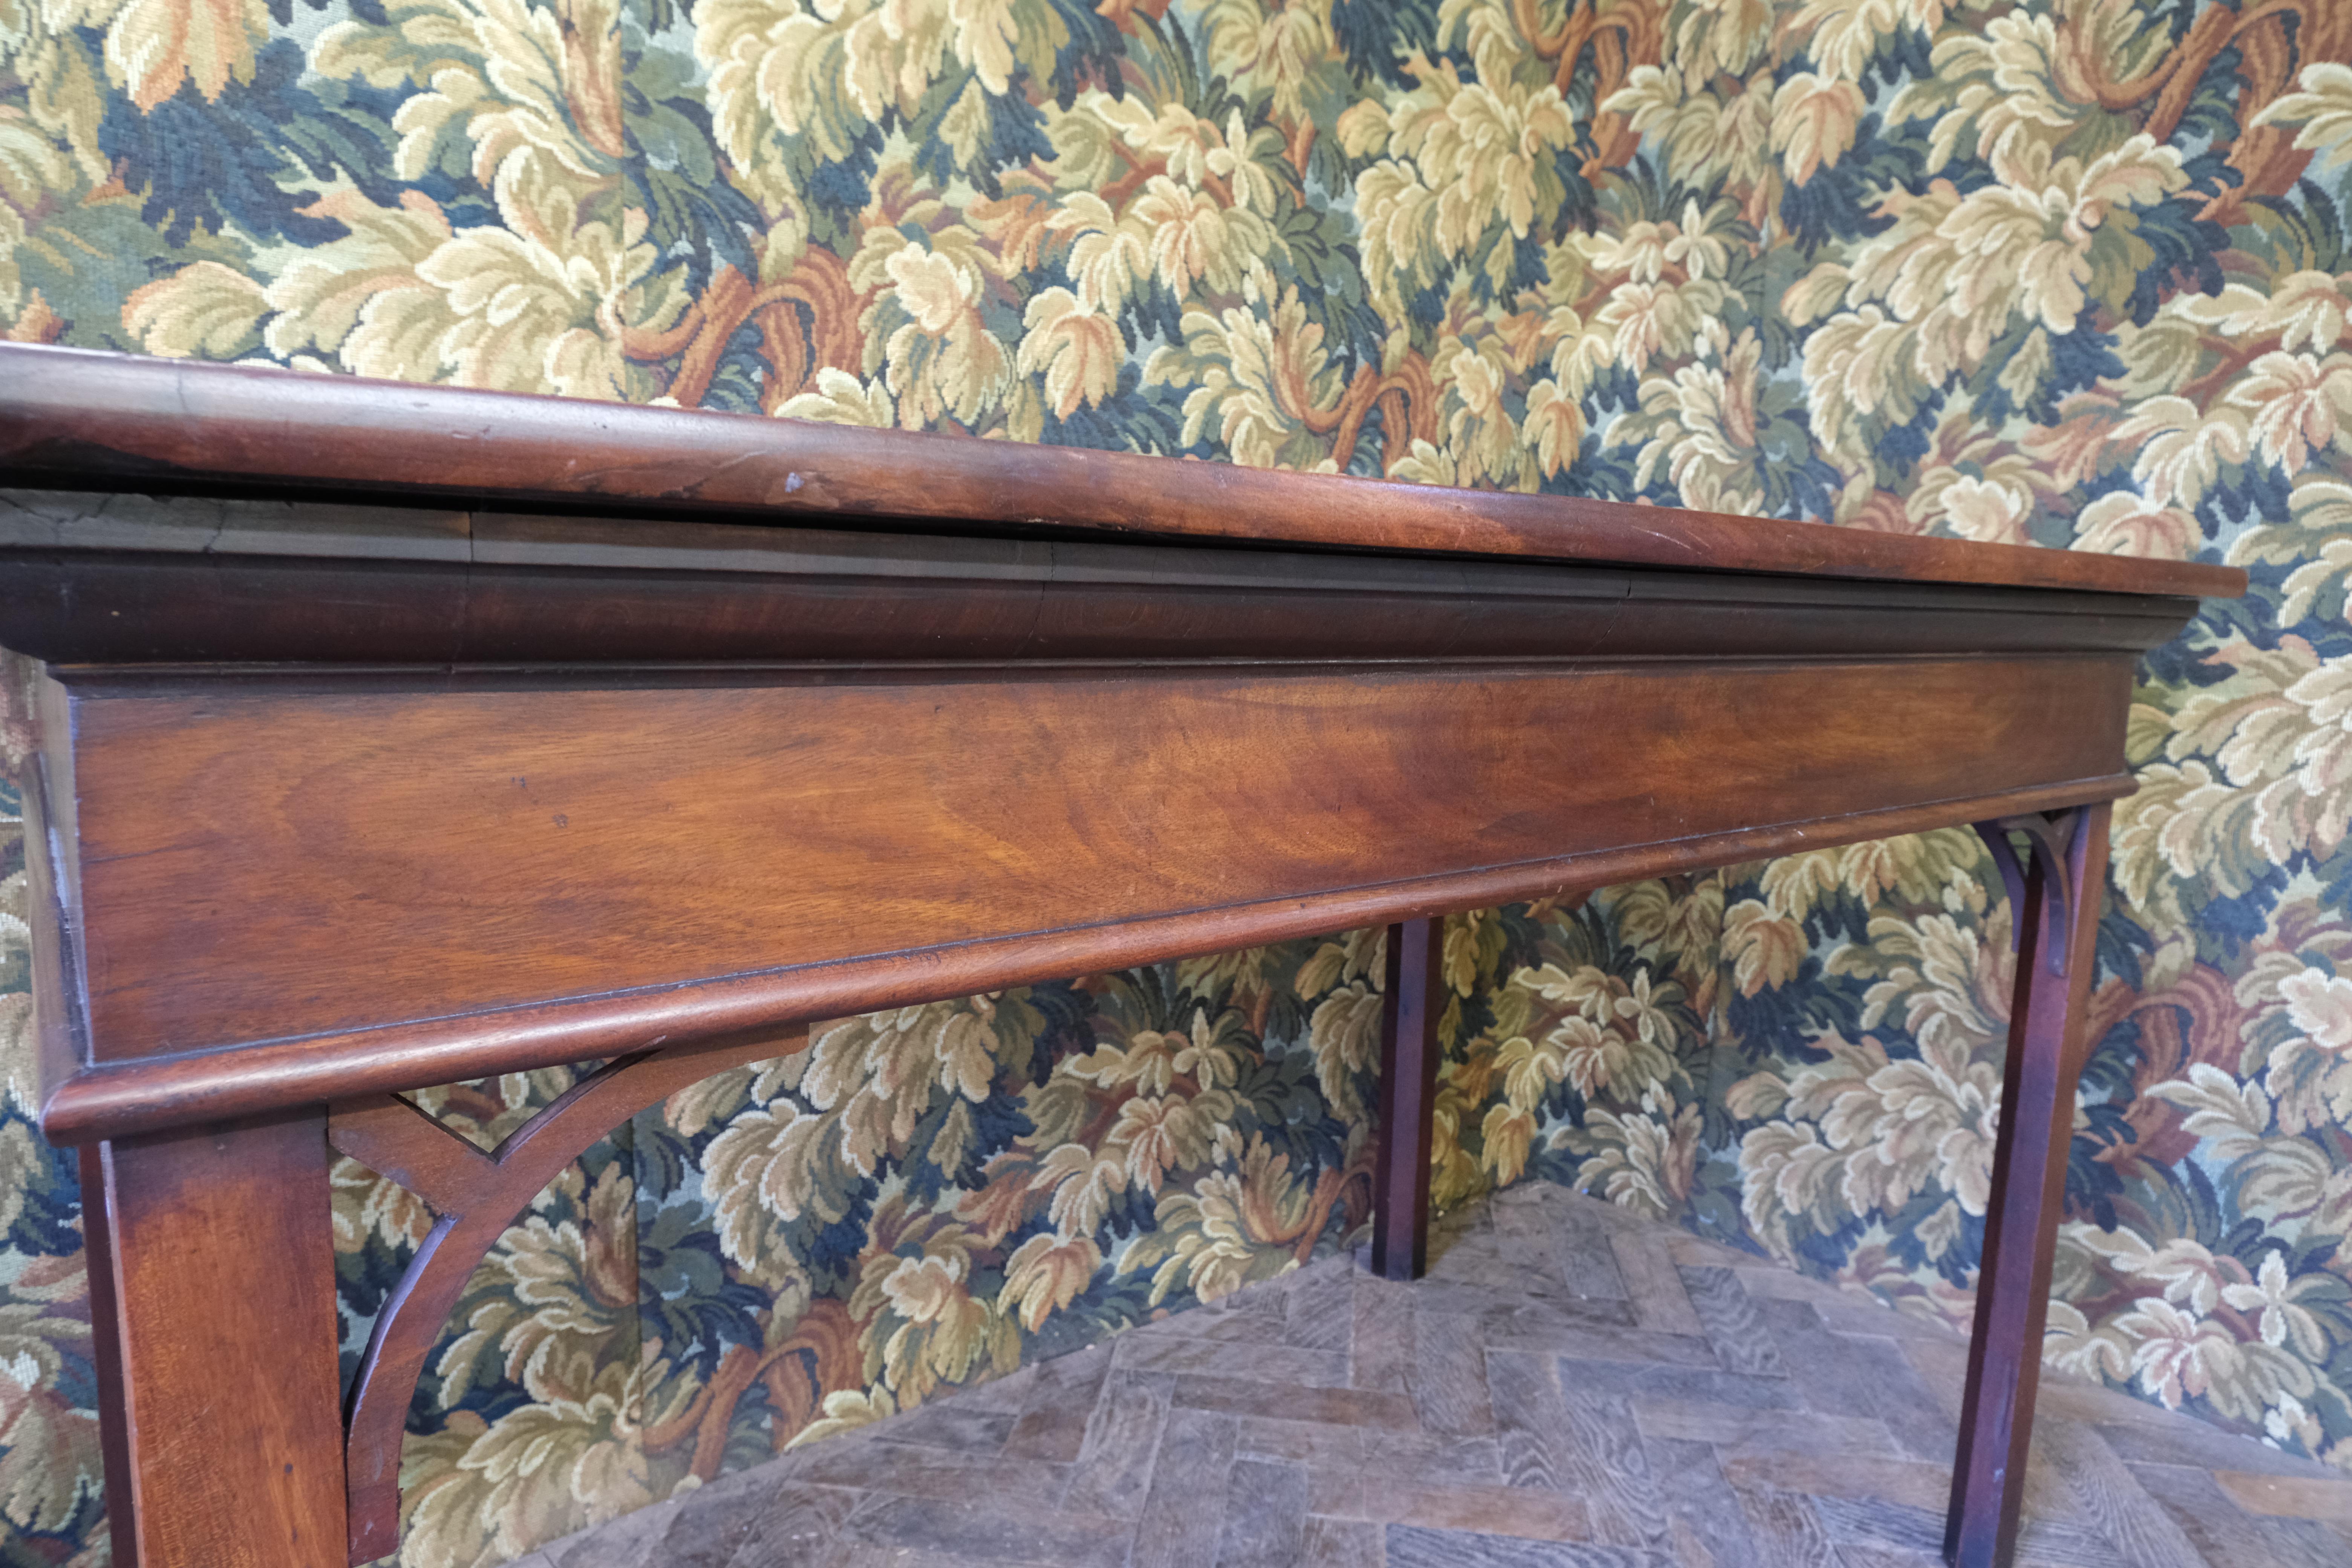 Hutton-Clarke Antiques präsentiert mit Stolz einen bedeutenden Chippendale-Mitteltisch aus einem Landhaus, der auf ca. 1760 zurückgeht. Dieses exquisite Stück ist so konzipiert, dass es aus jedem Blickwinkel bewundert werden kann. Es ist eine